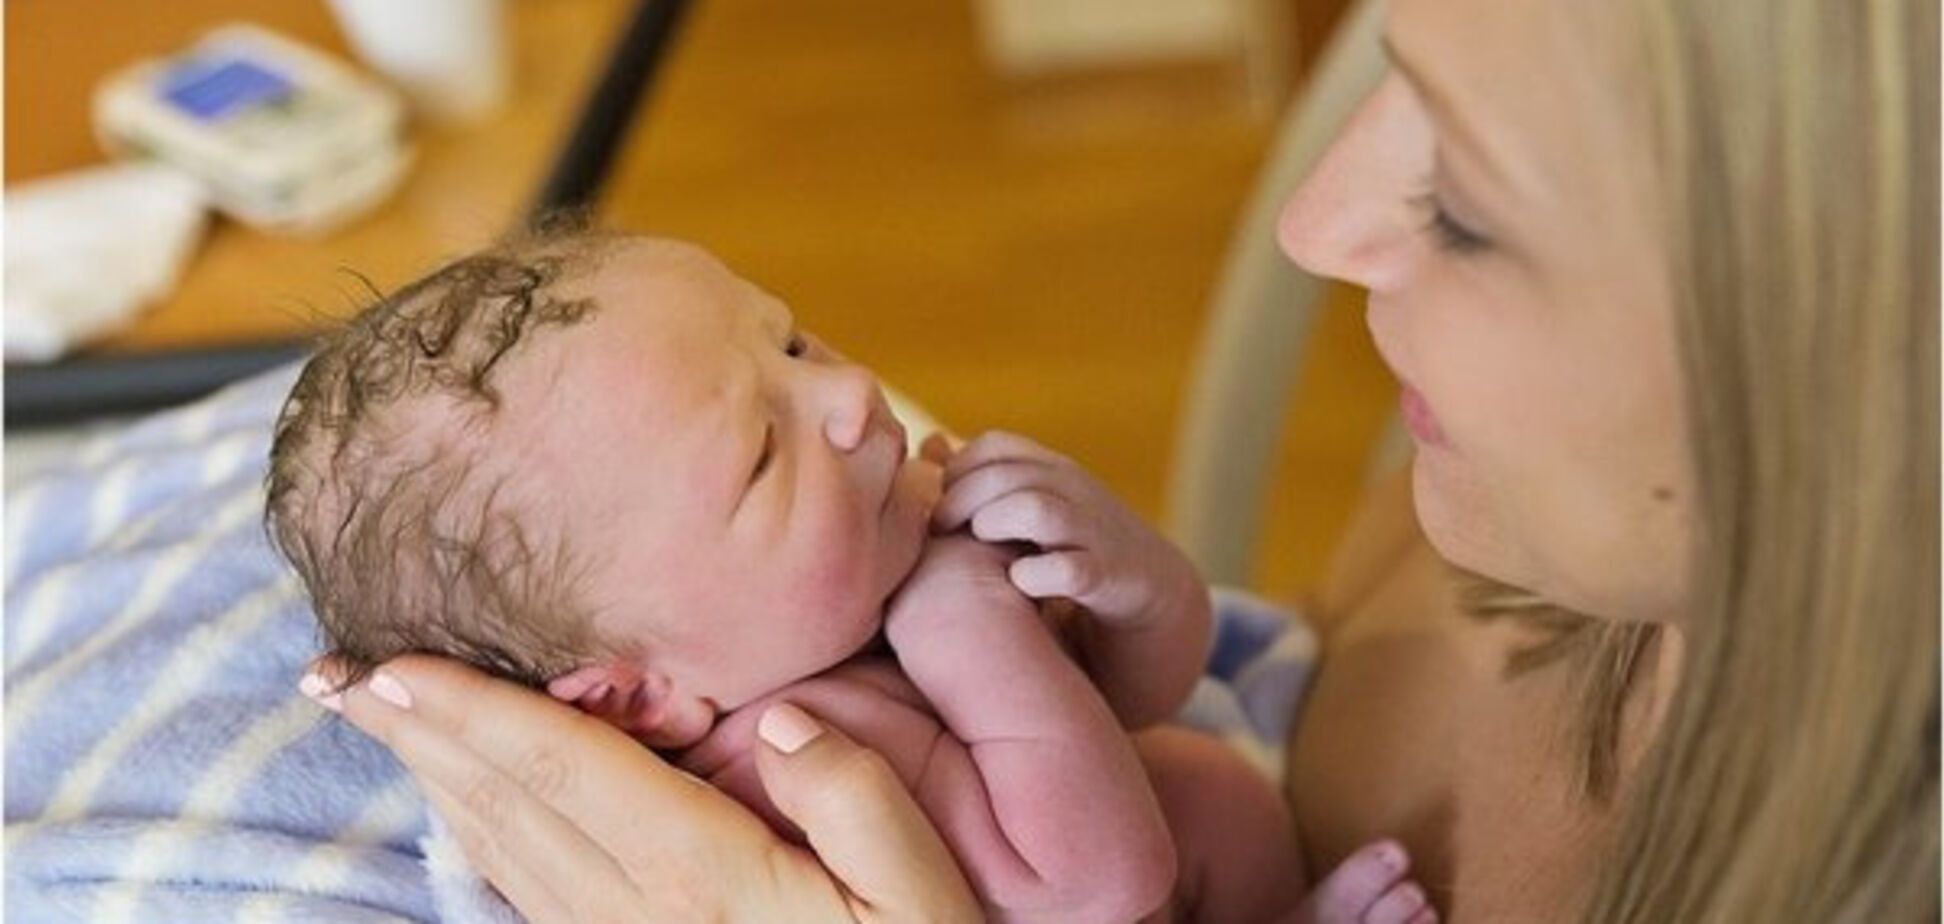 Первая встреча: трогательный фотопроект мам с новорожденными детьми